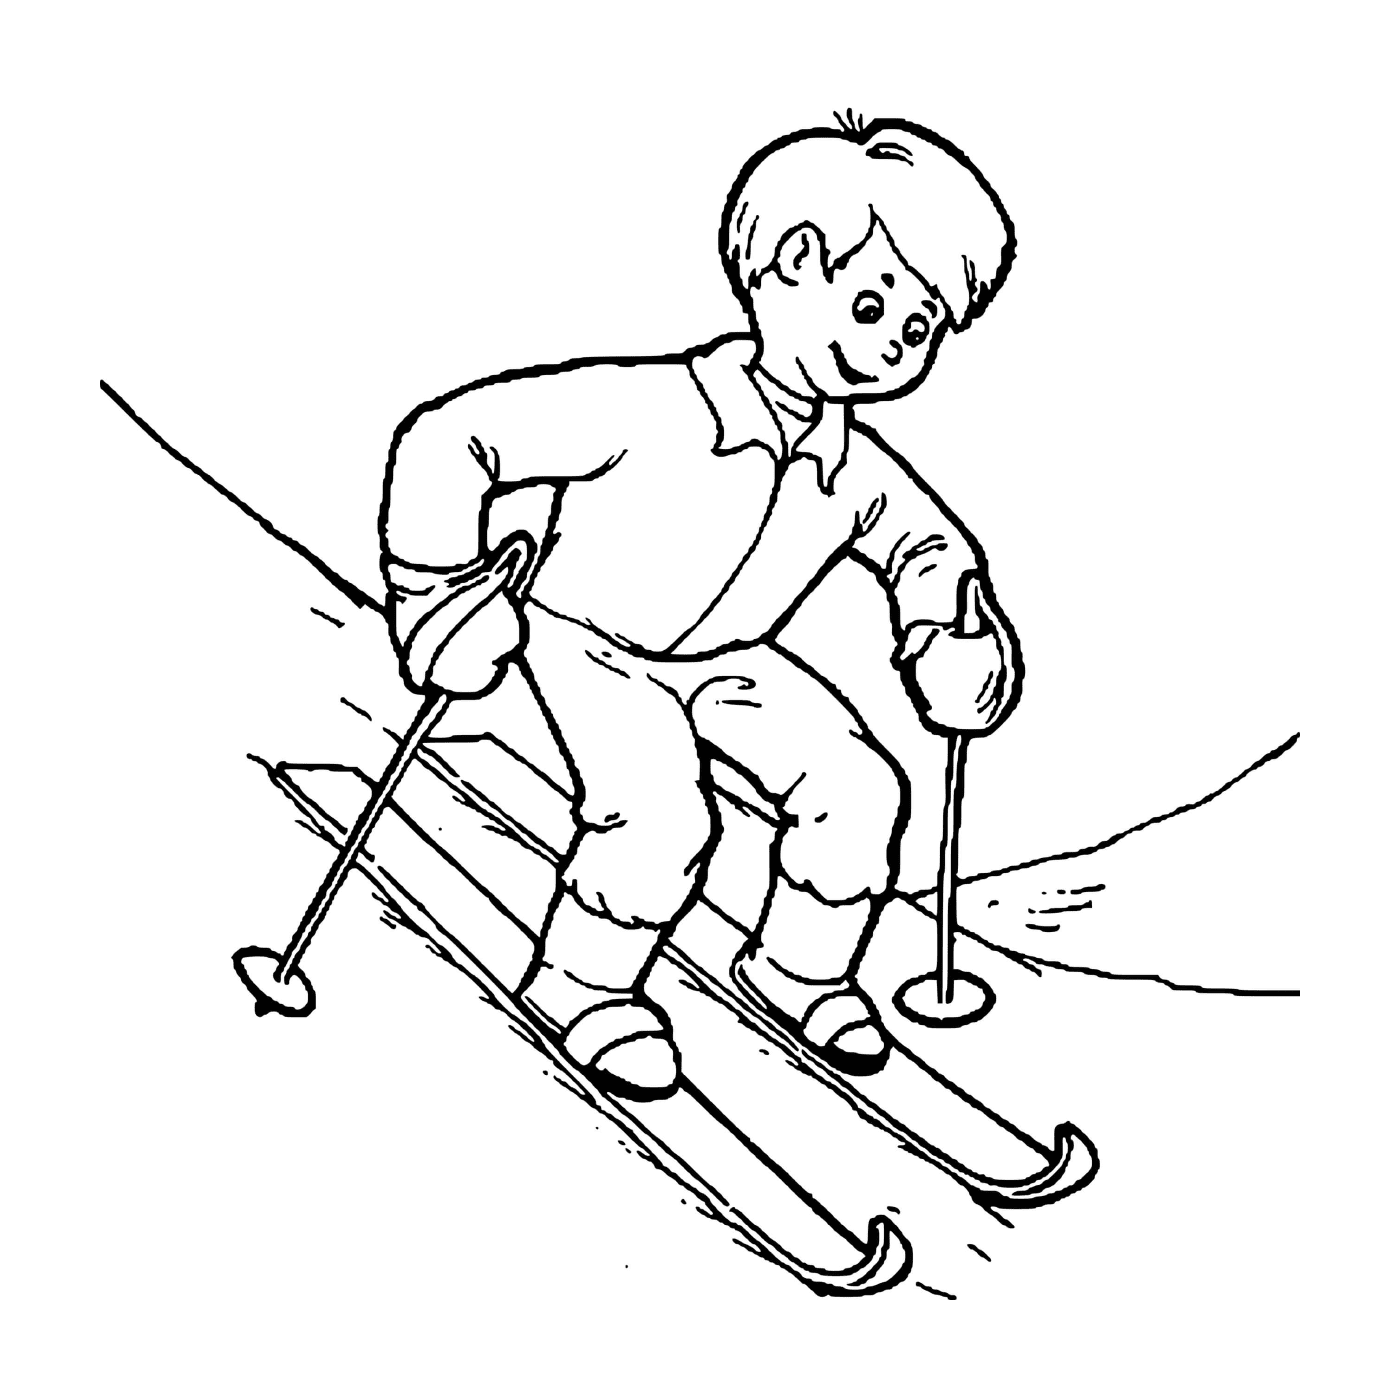  El niño aprende a esquiar con entusiasmo 